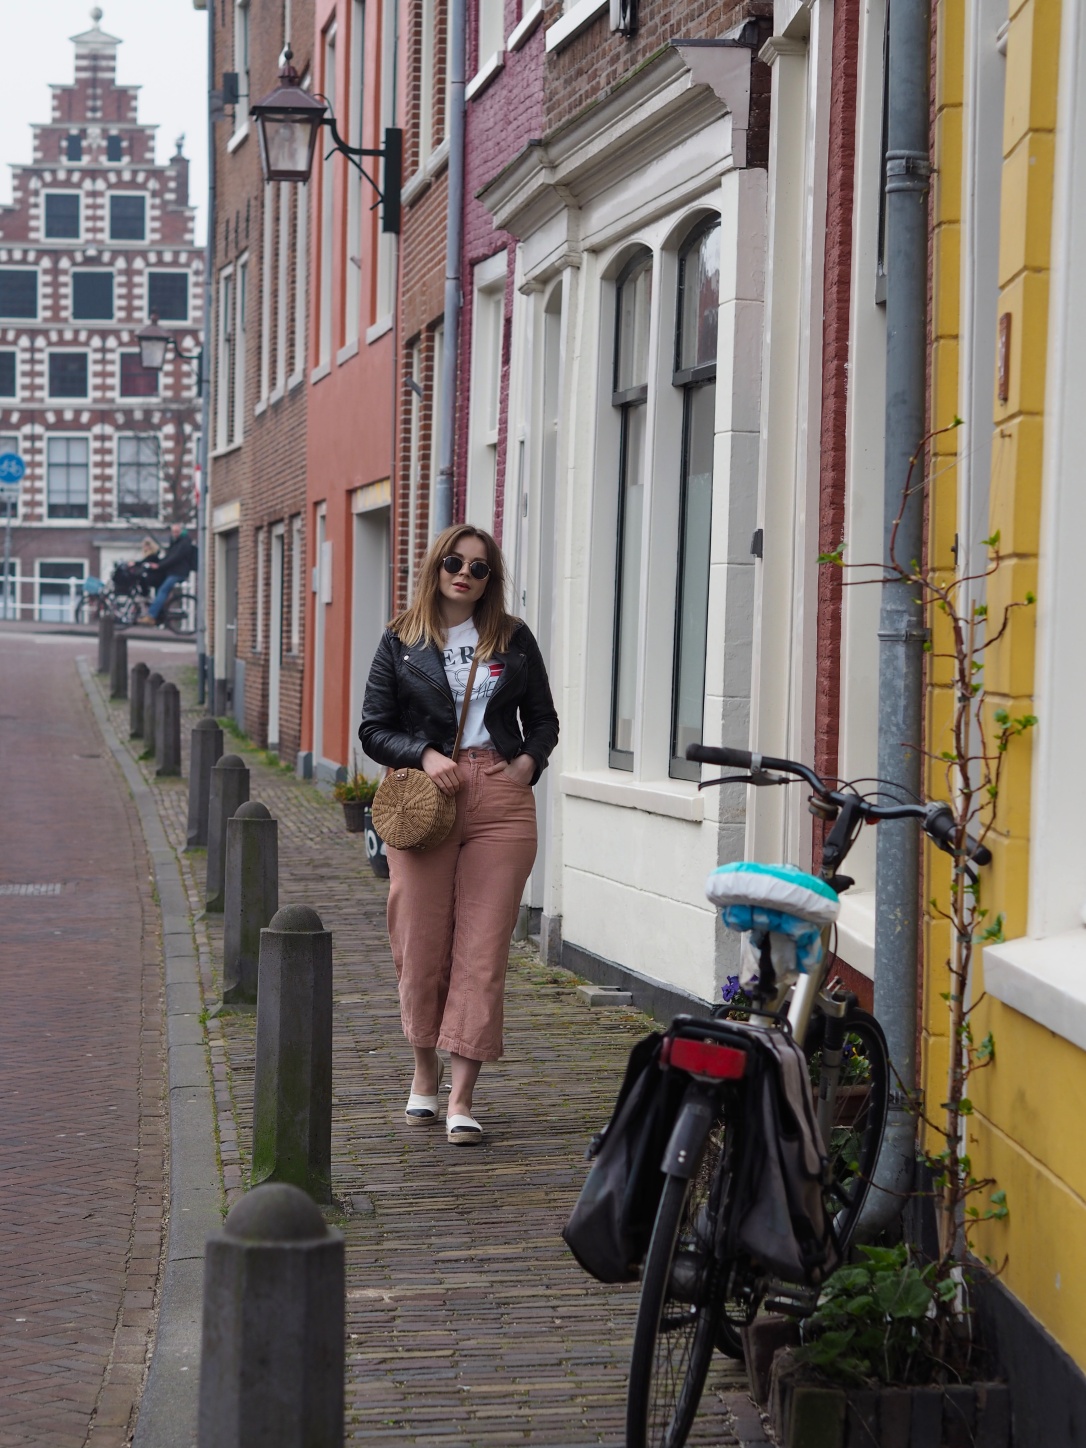 Reasons to visit Haarlem